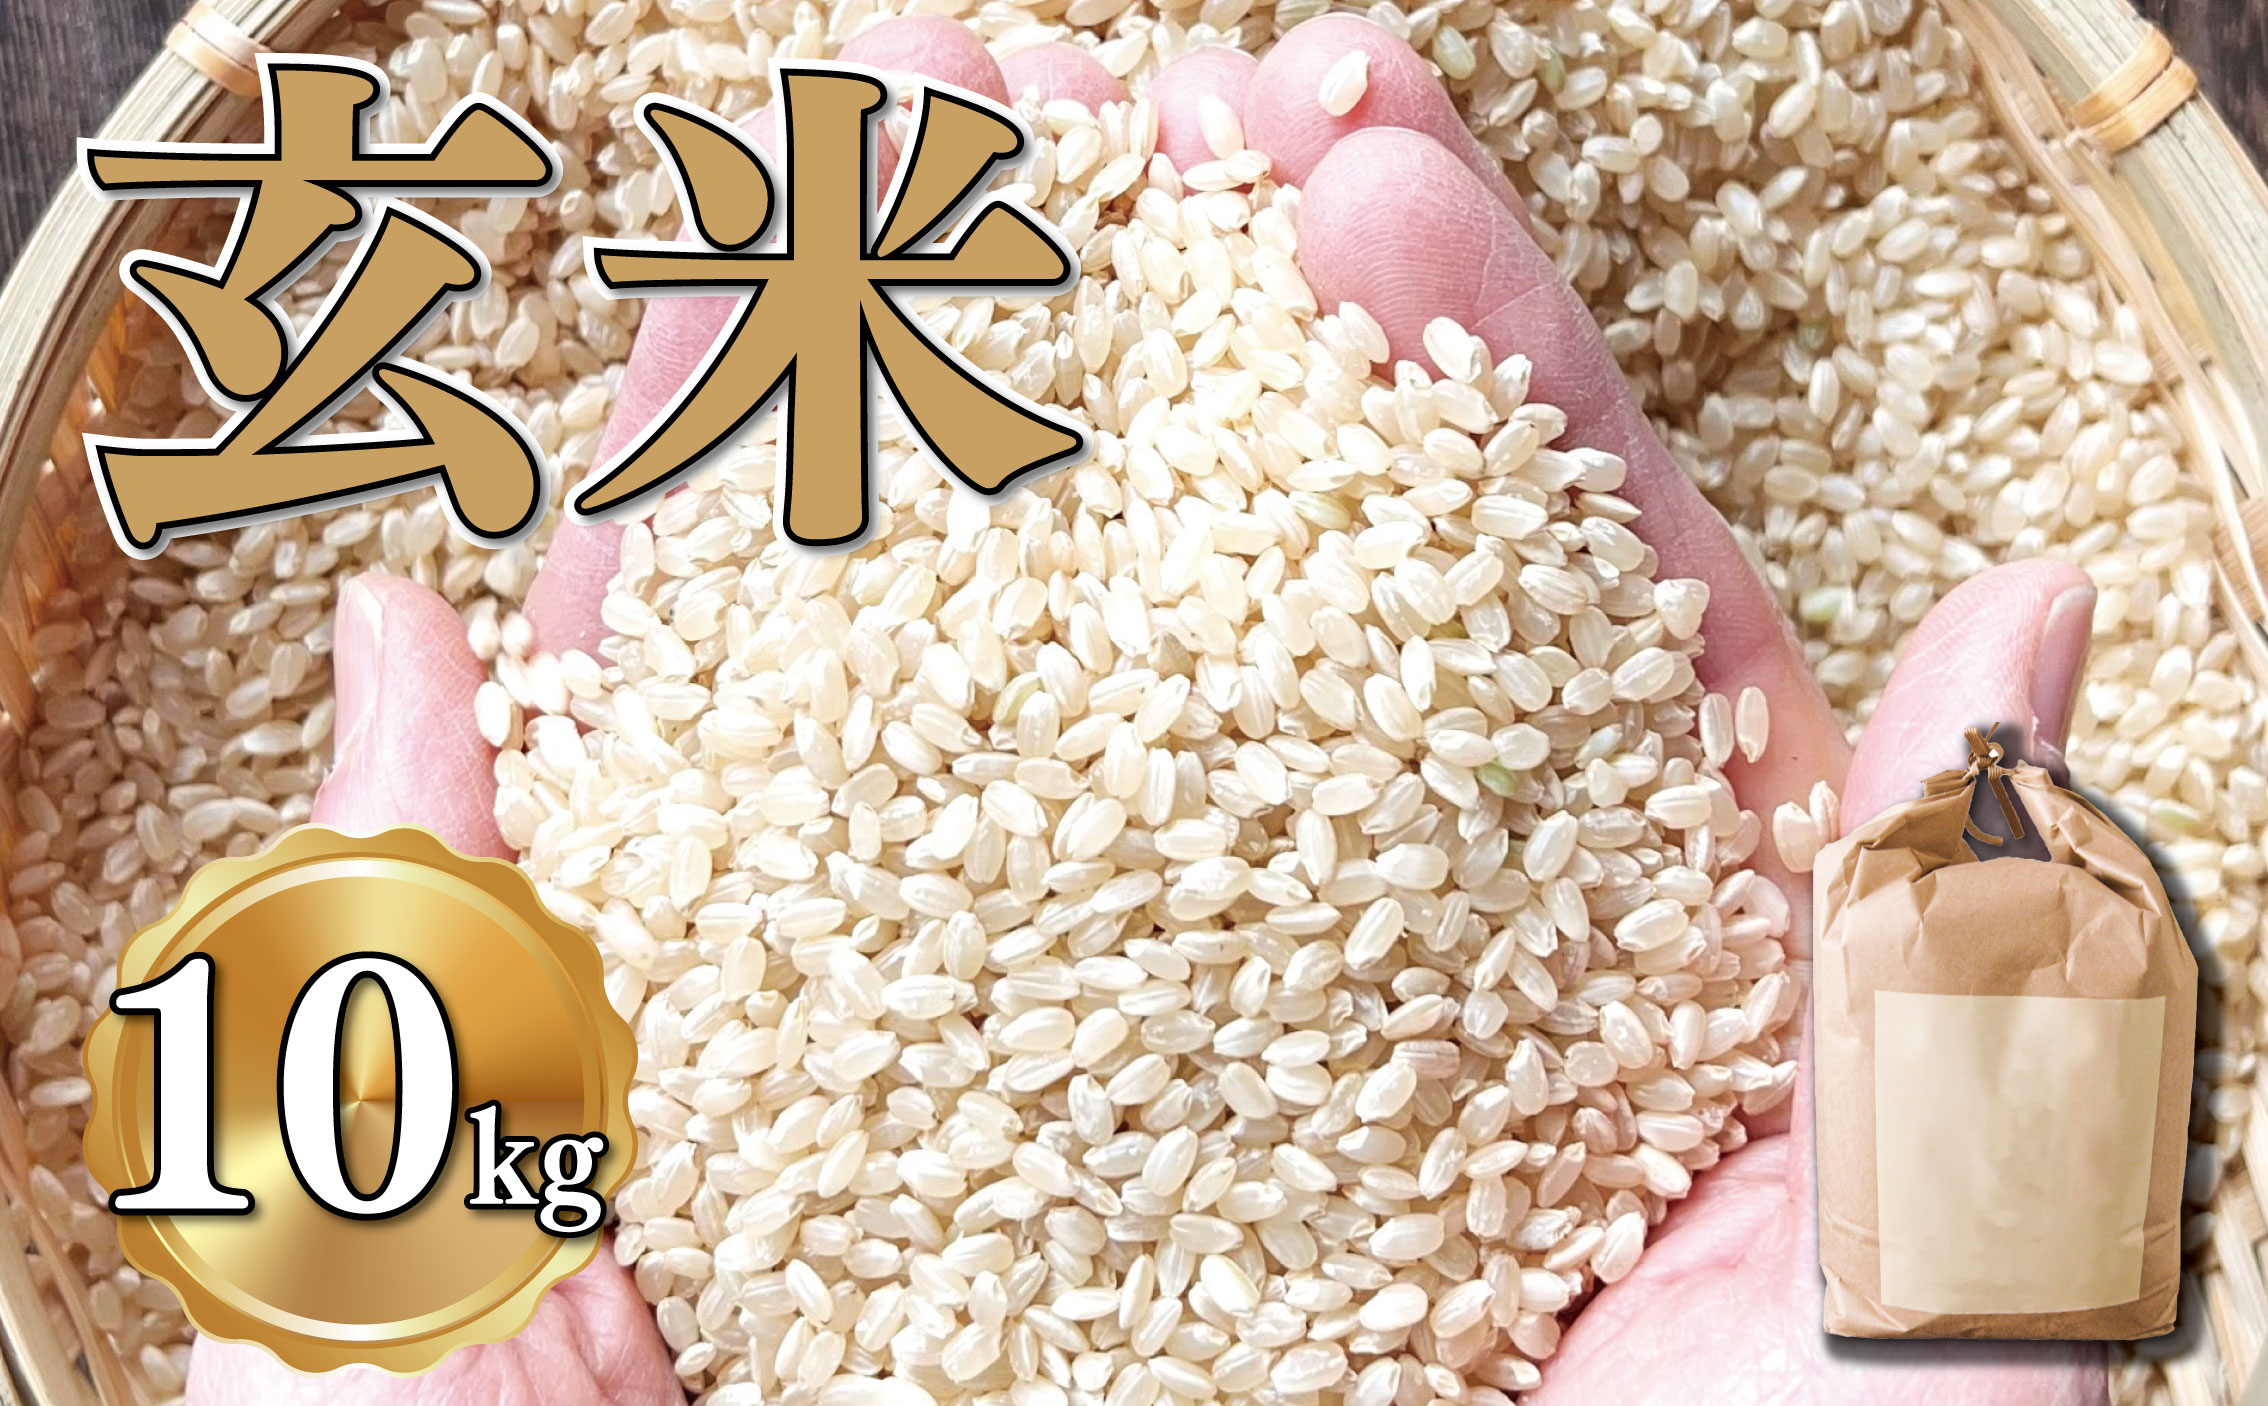 新米 玄米 約10kg 約10キロ お米 栽培期間中農薬不使用 にこまる 安心 安全 こだわり栽培